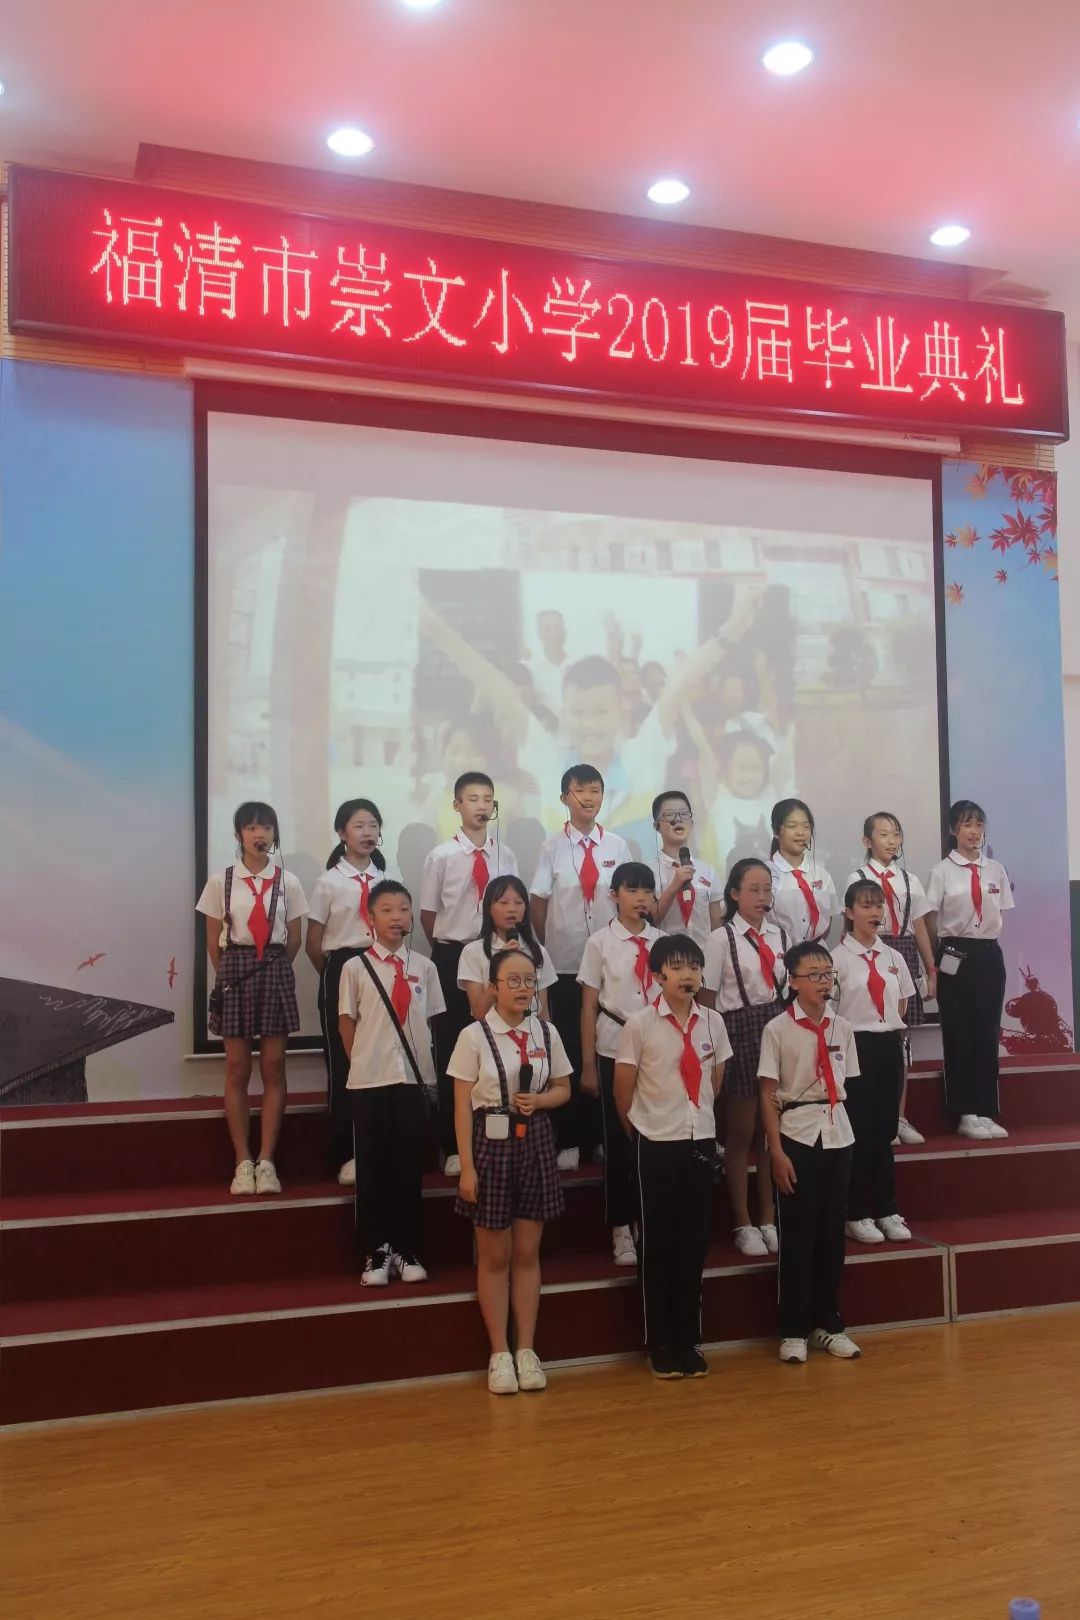 典礼在雄壮的国歌声中拉开了福清市崇文小学2019届学生毕业典礼的序幕